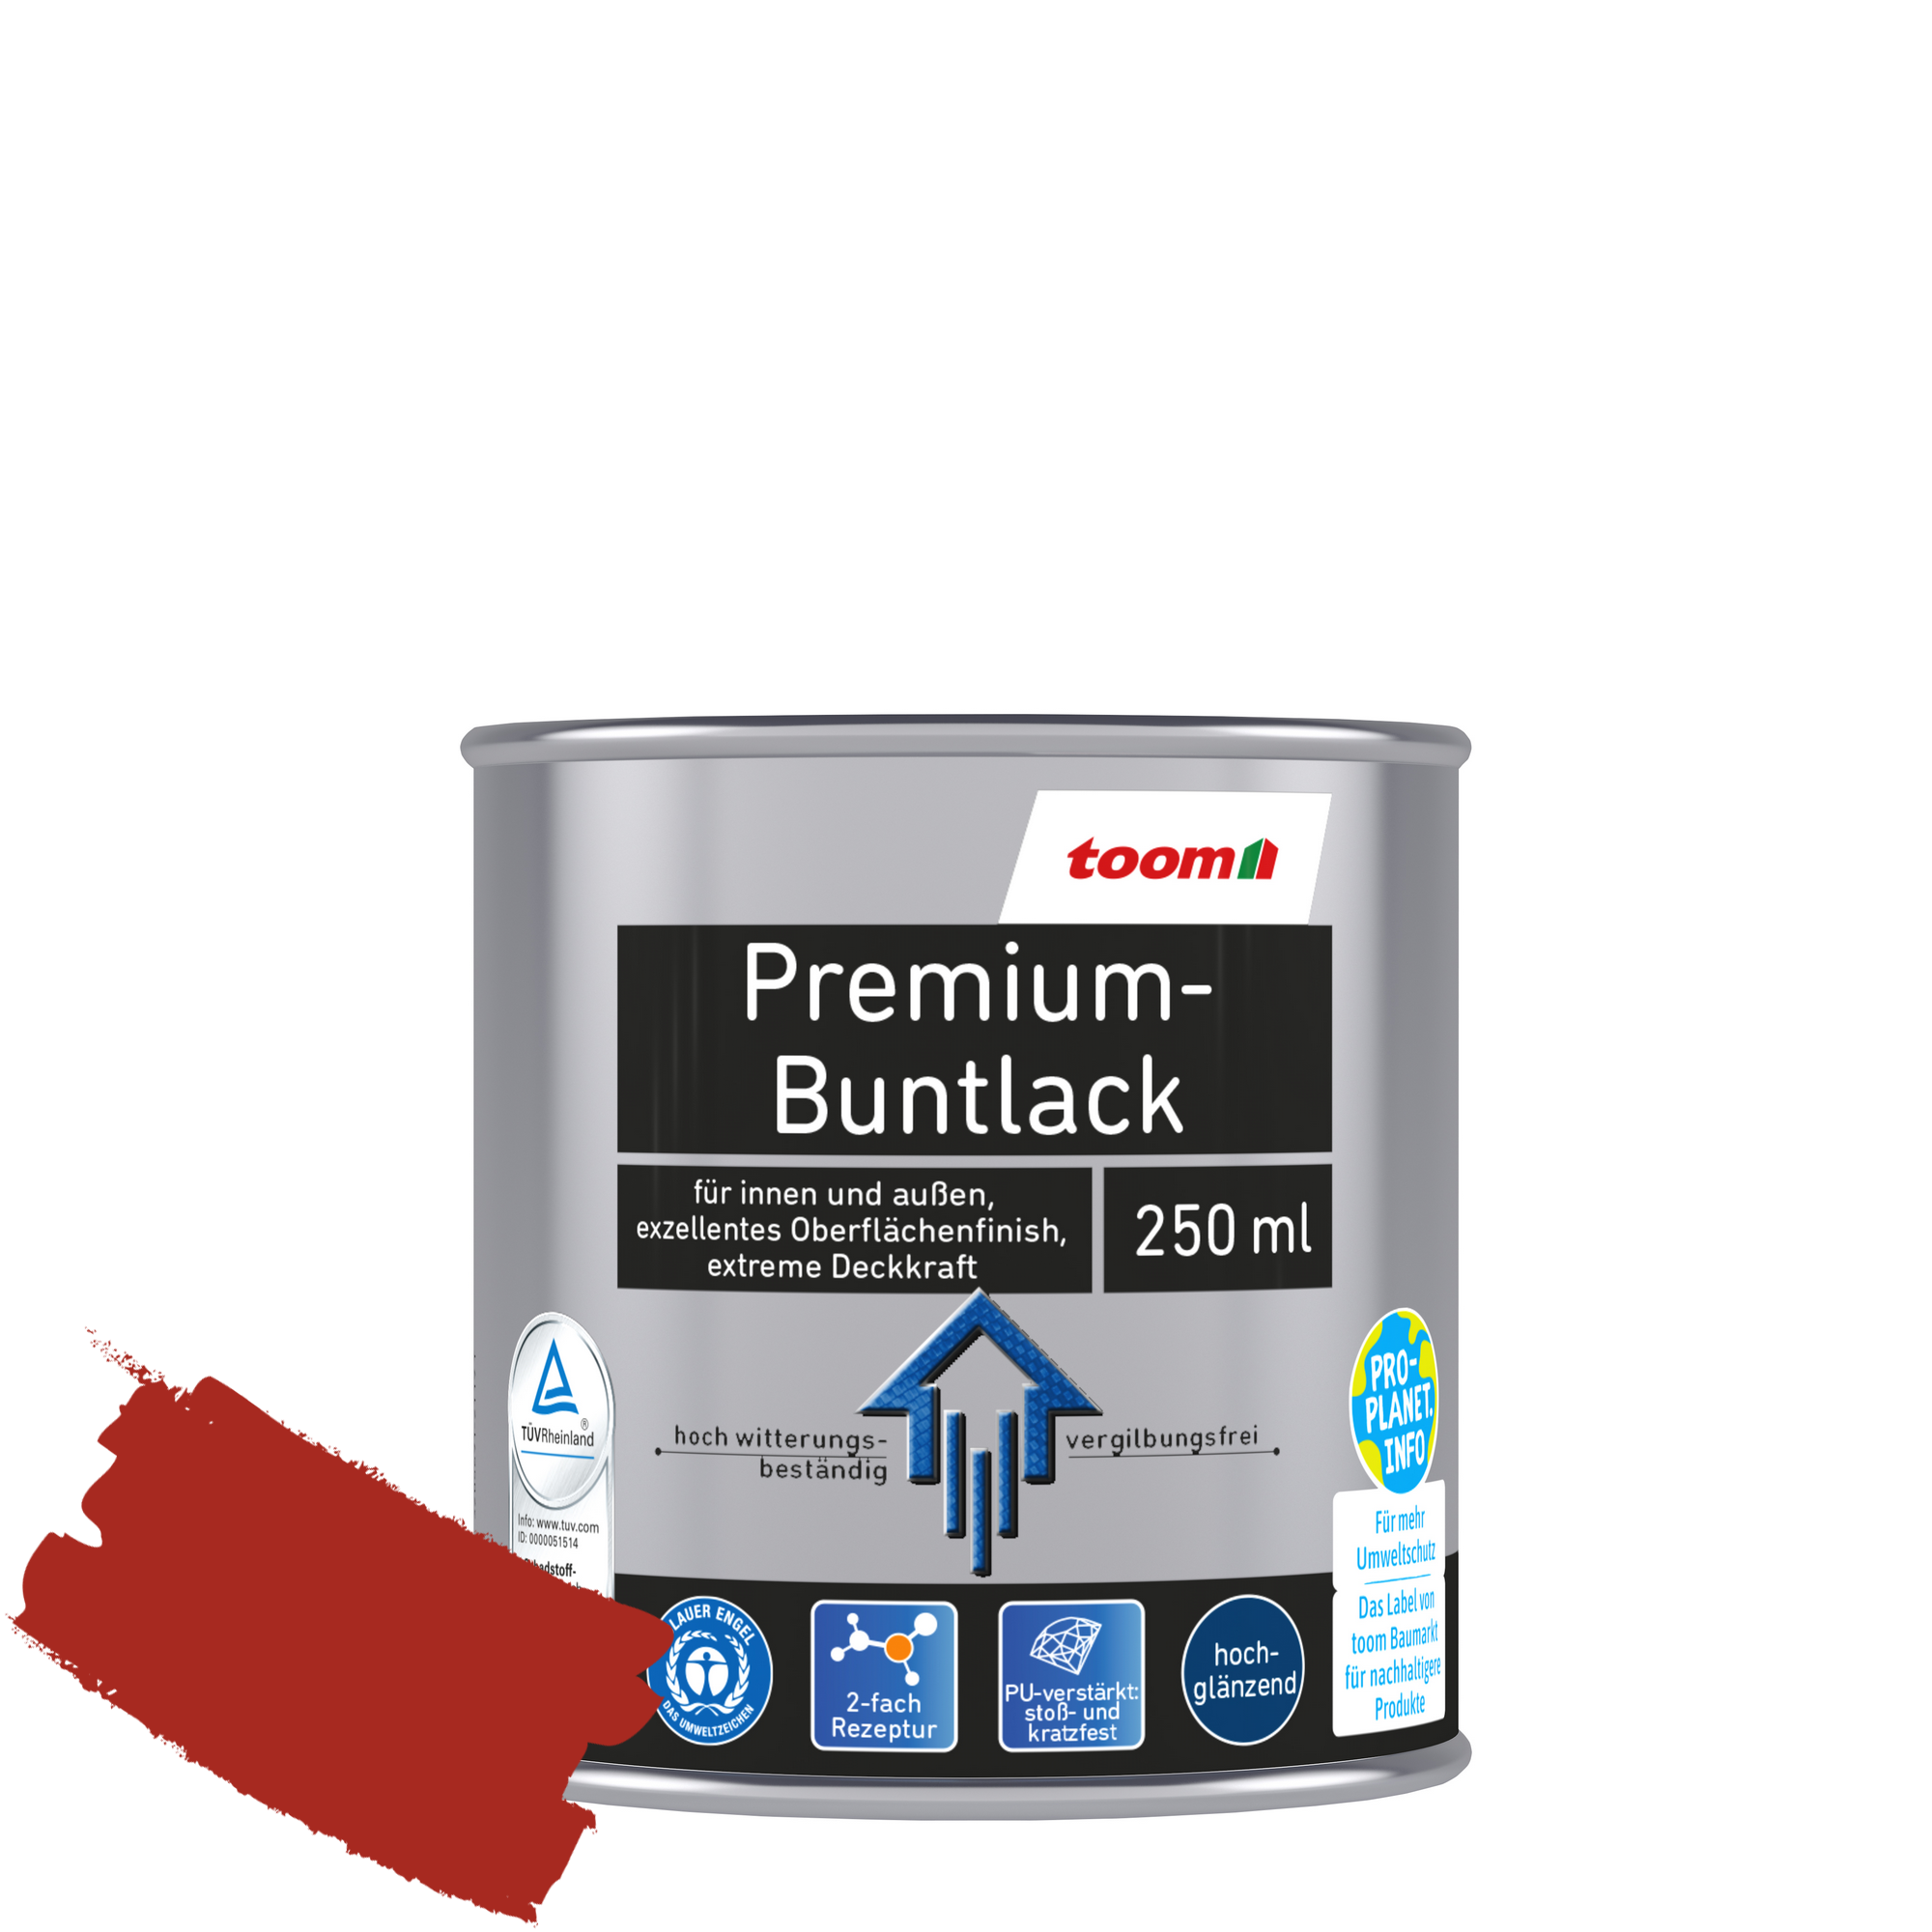 Premium-Buntlack feuerrot glänzend 250 ml + product picture